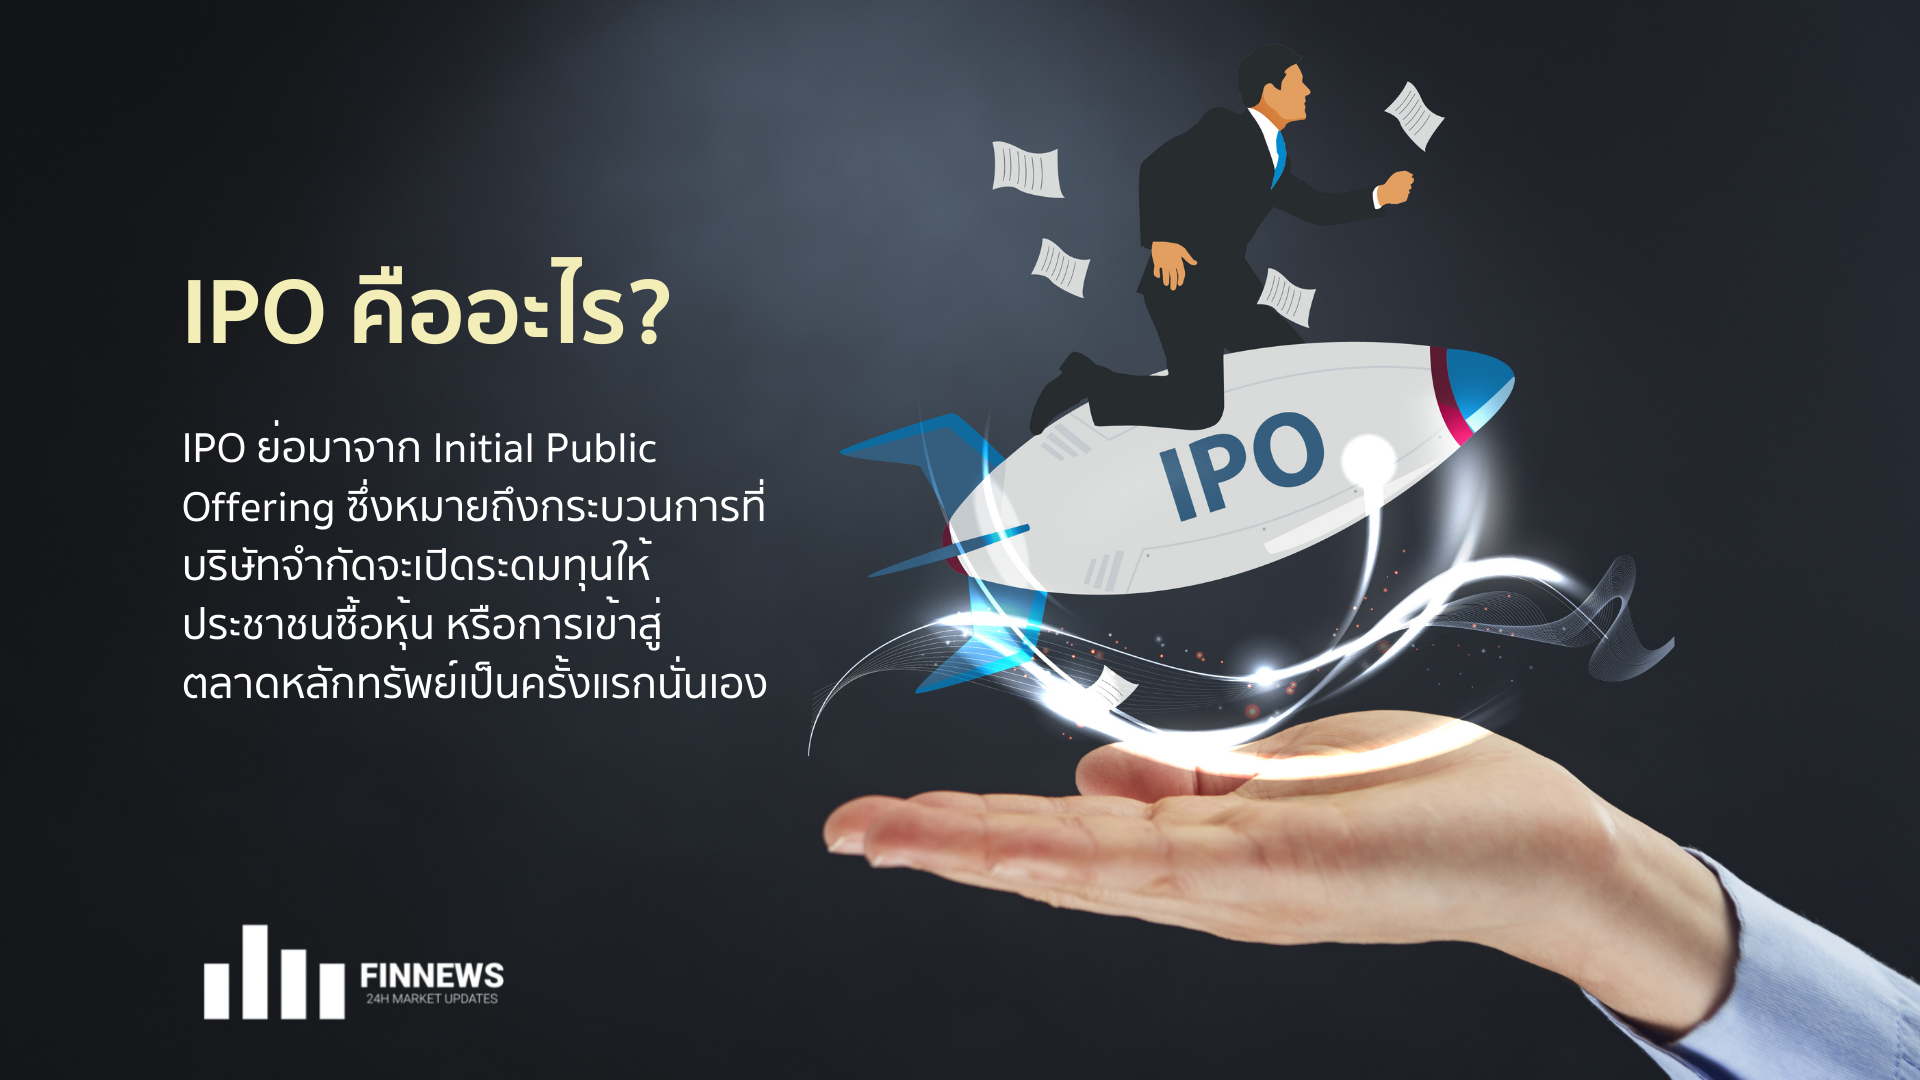 หุ้น IPO คืออะไร? ซื้อหุ้นยังไง? มาดูวิธีซื้อและเคล็ดลับการลงทุน